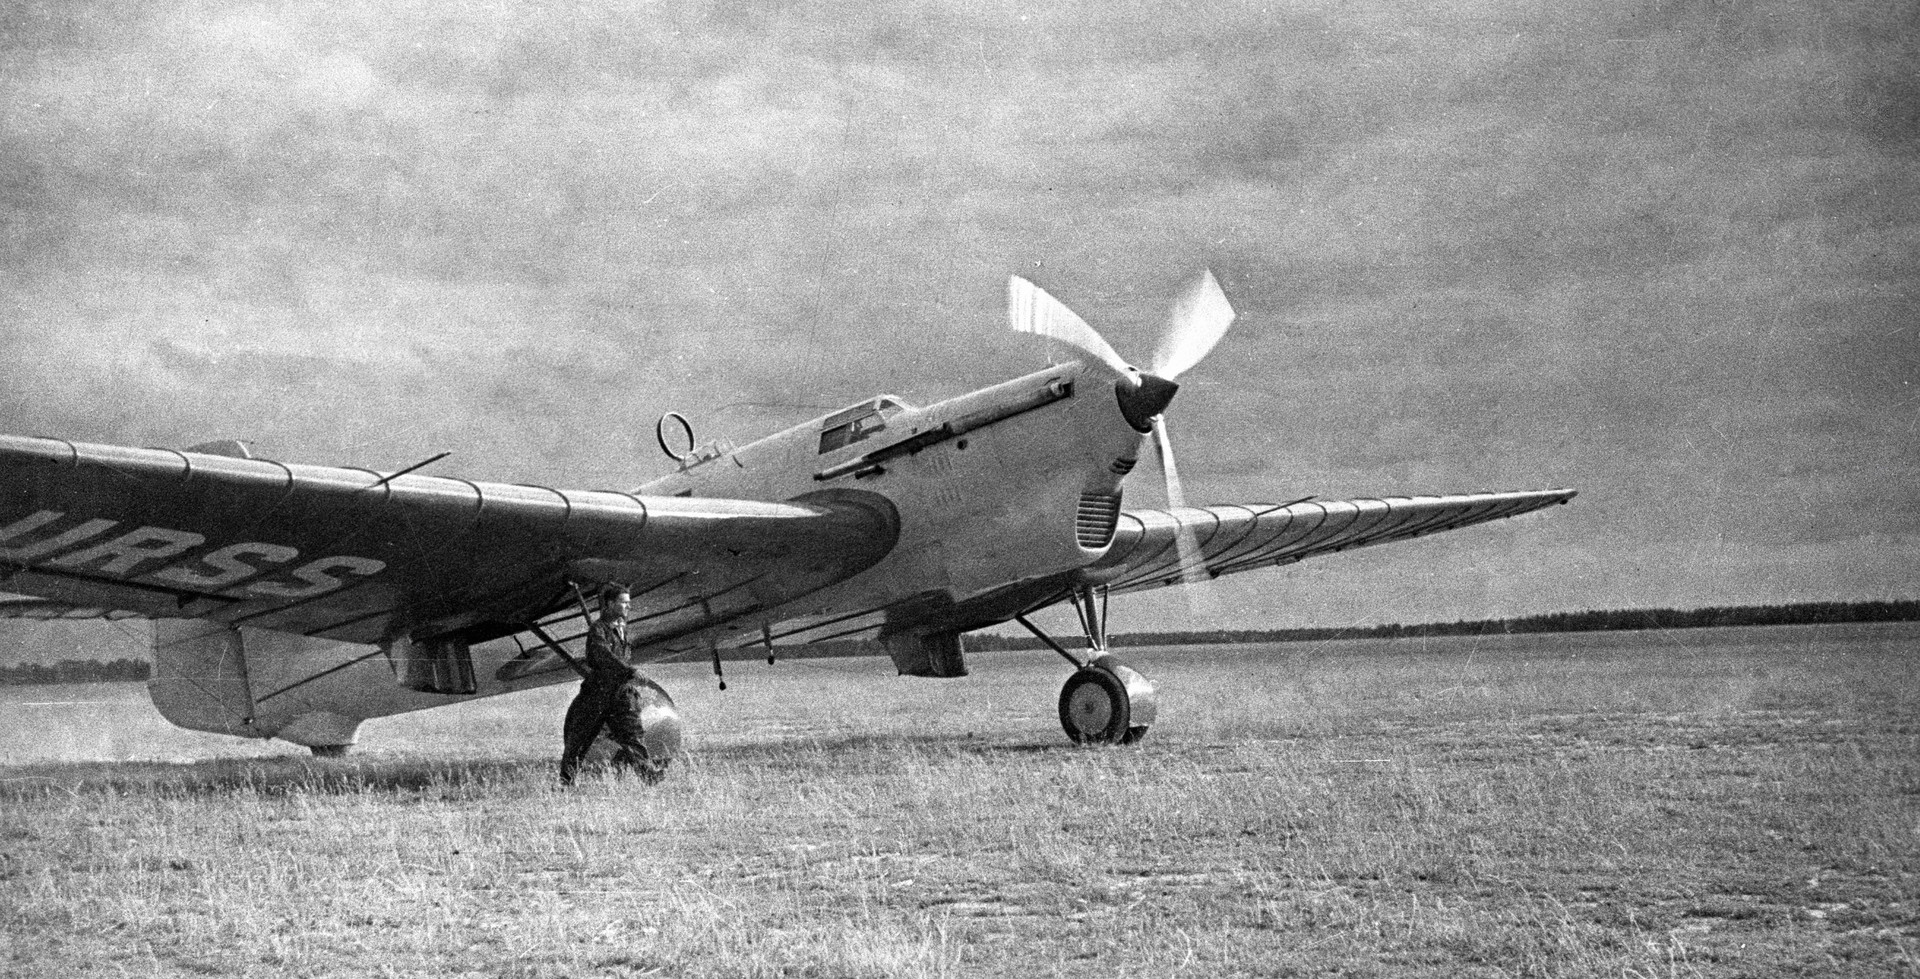 1937年 6月 18 日にモスクワー北極ー米国という航路で飛行し、バンクーバーで到着したANT-25。